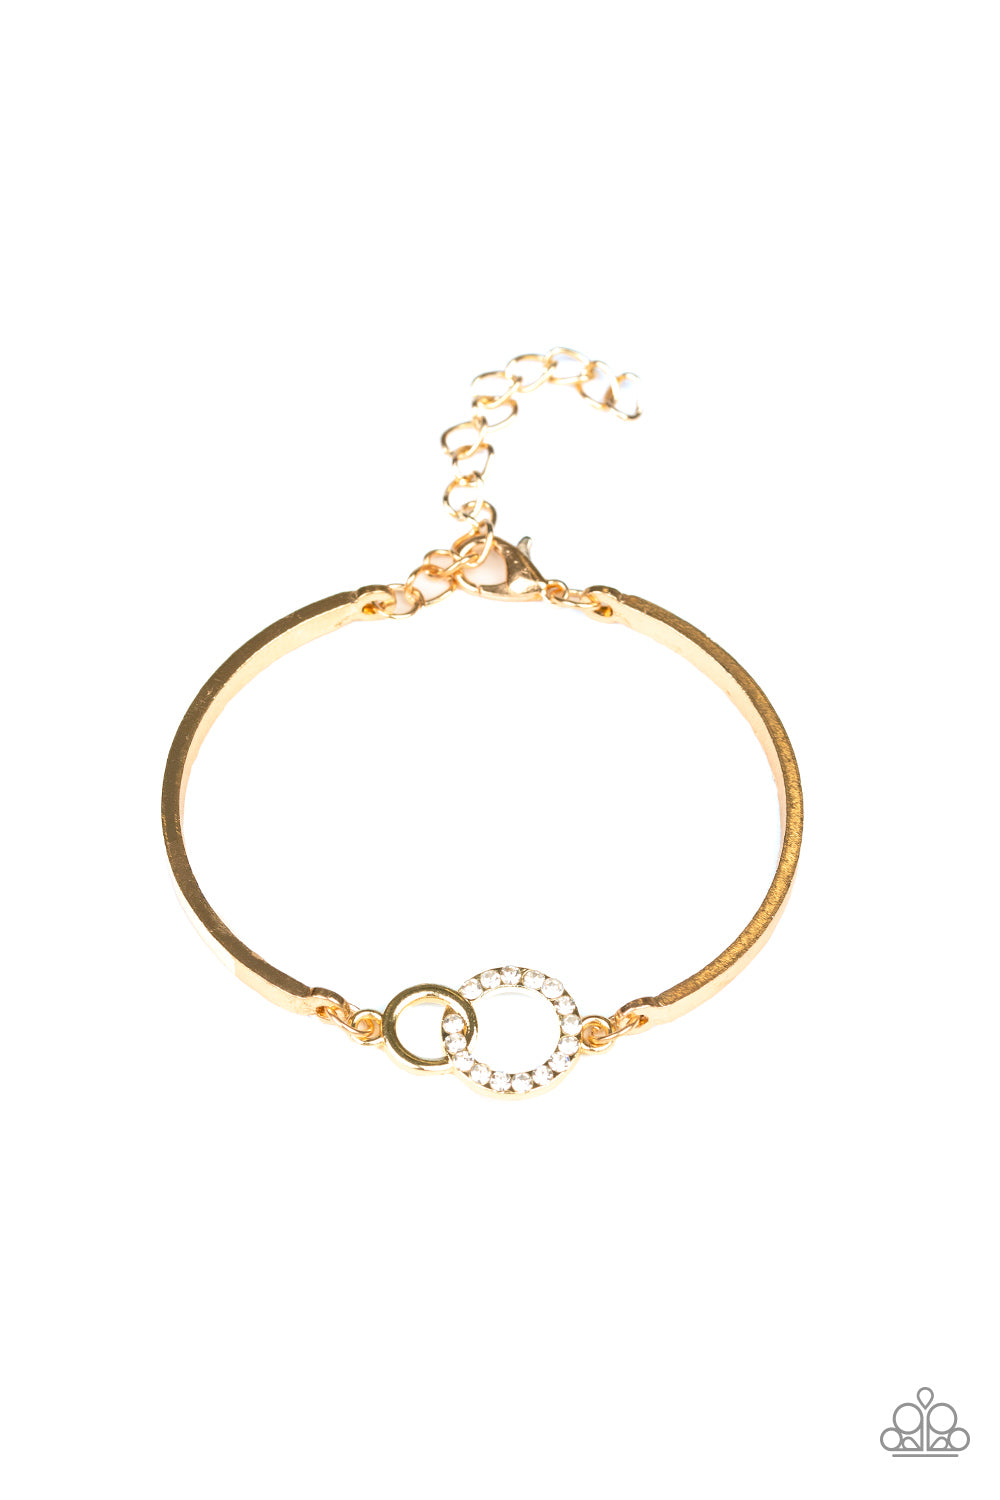 Paparazzi Bracelets - Simple Sophistication - Gold